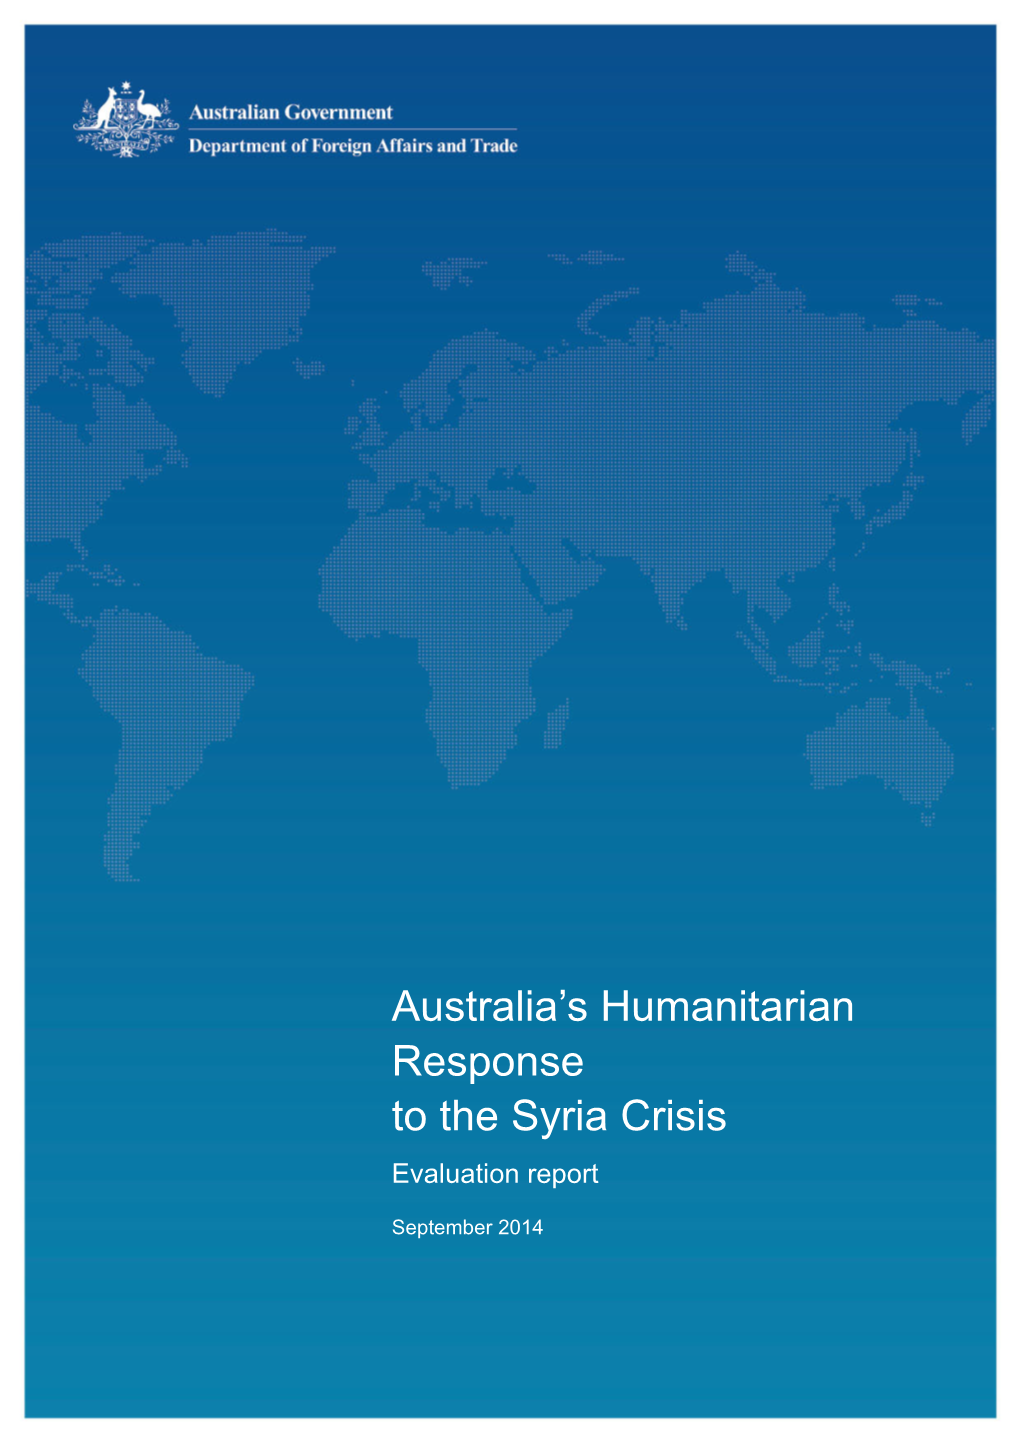 Evaluation of Australia's Humanitarian Response to the Syria Crisis